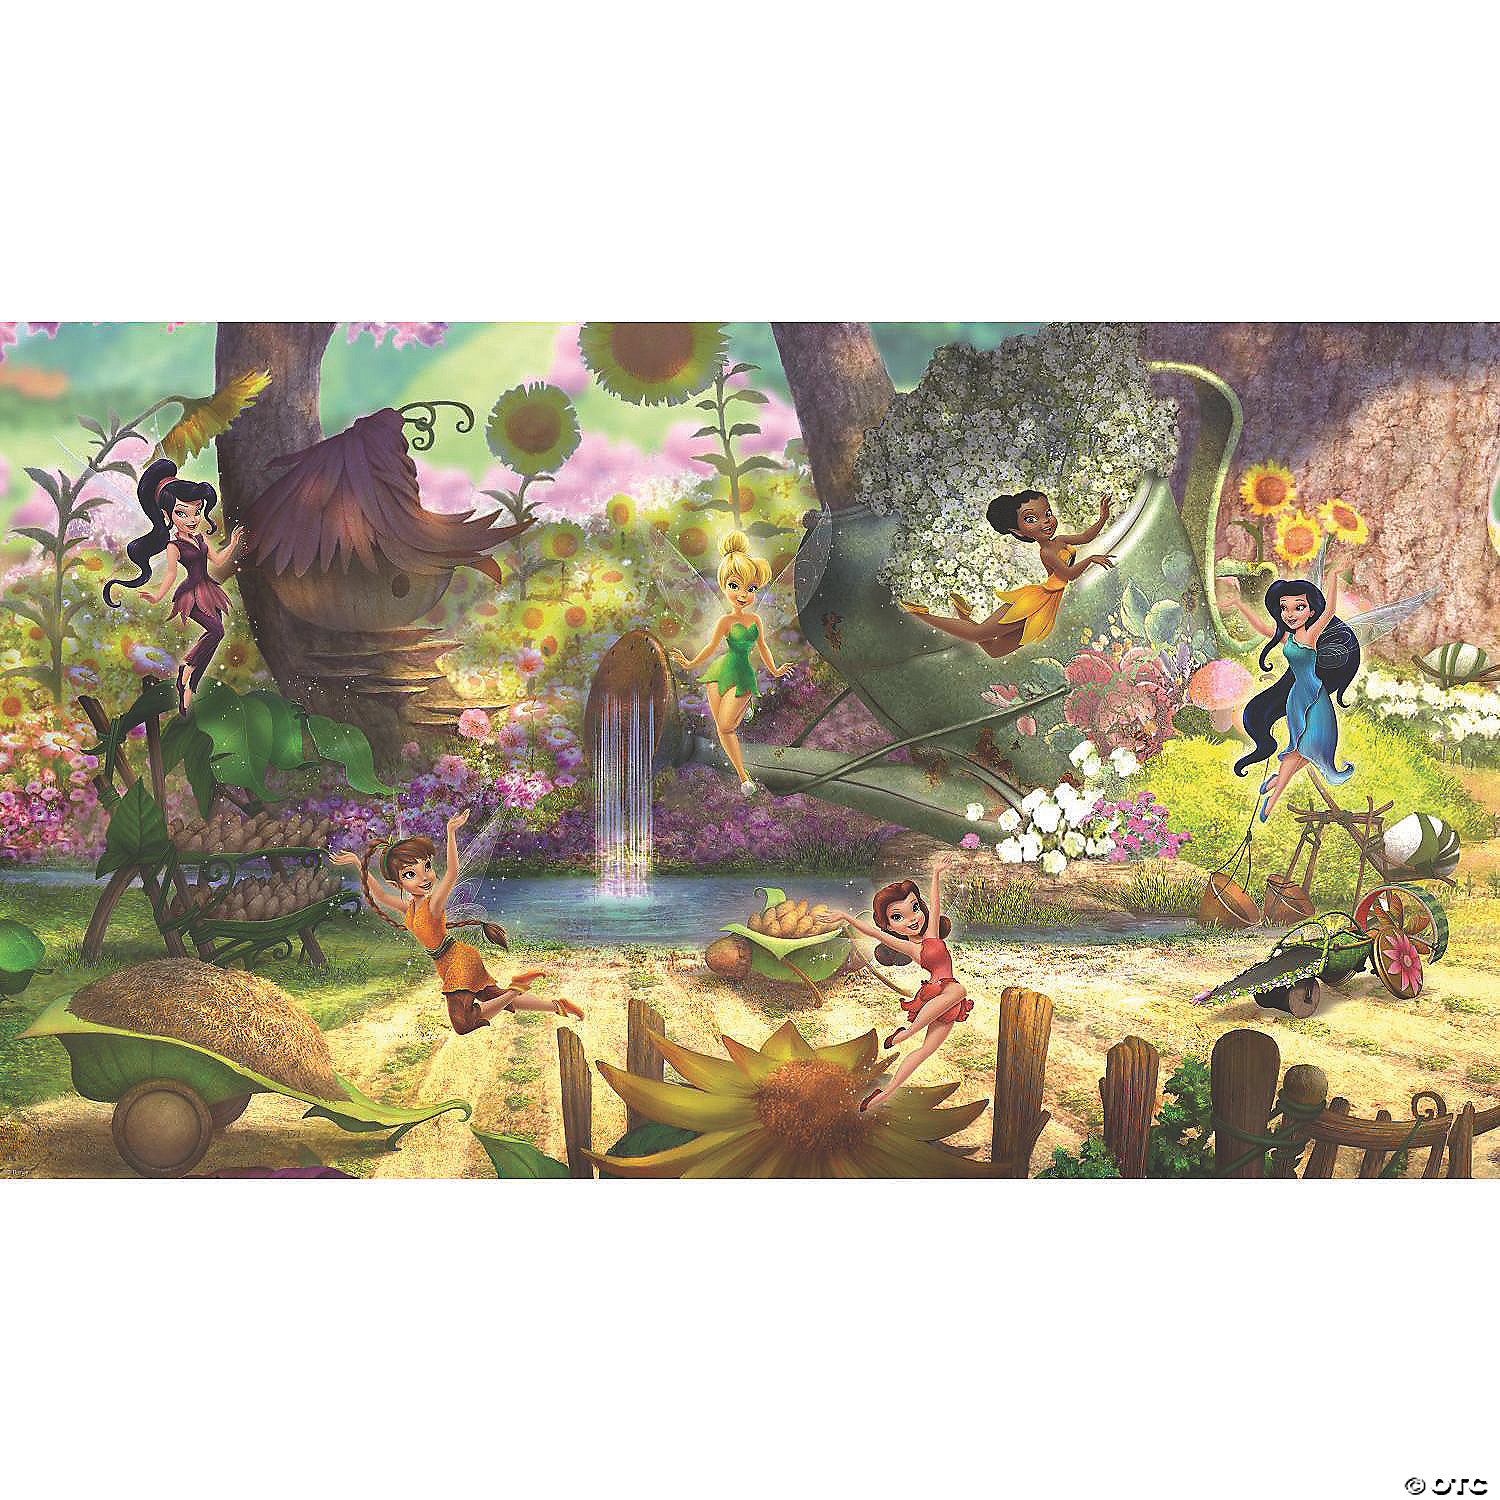 Disney Fairies Pixie Hollow Wallpaper Mural